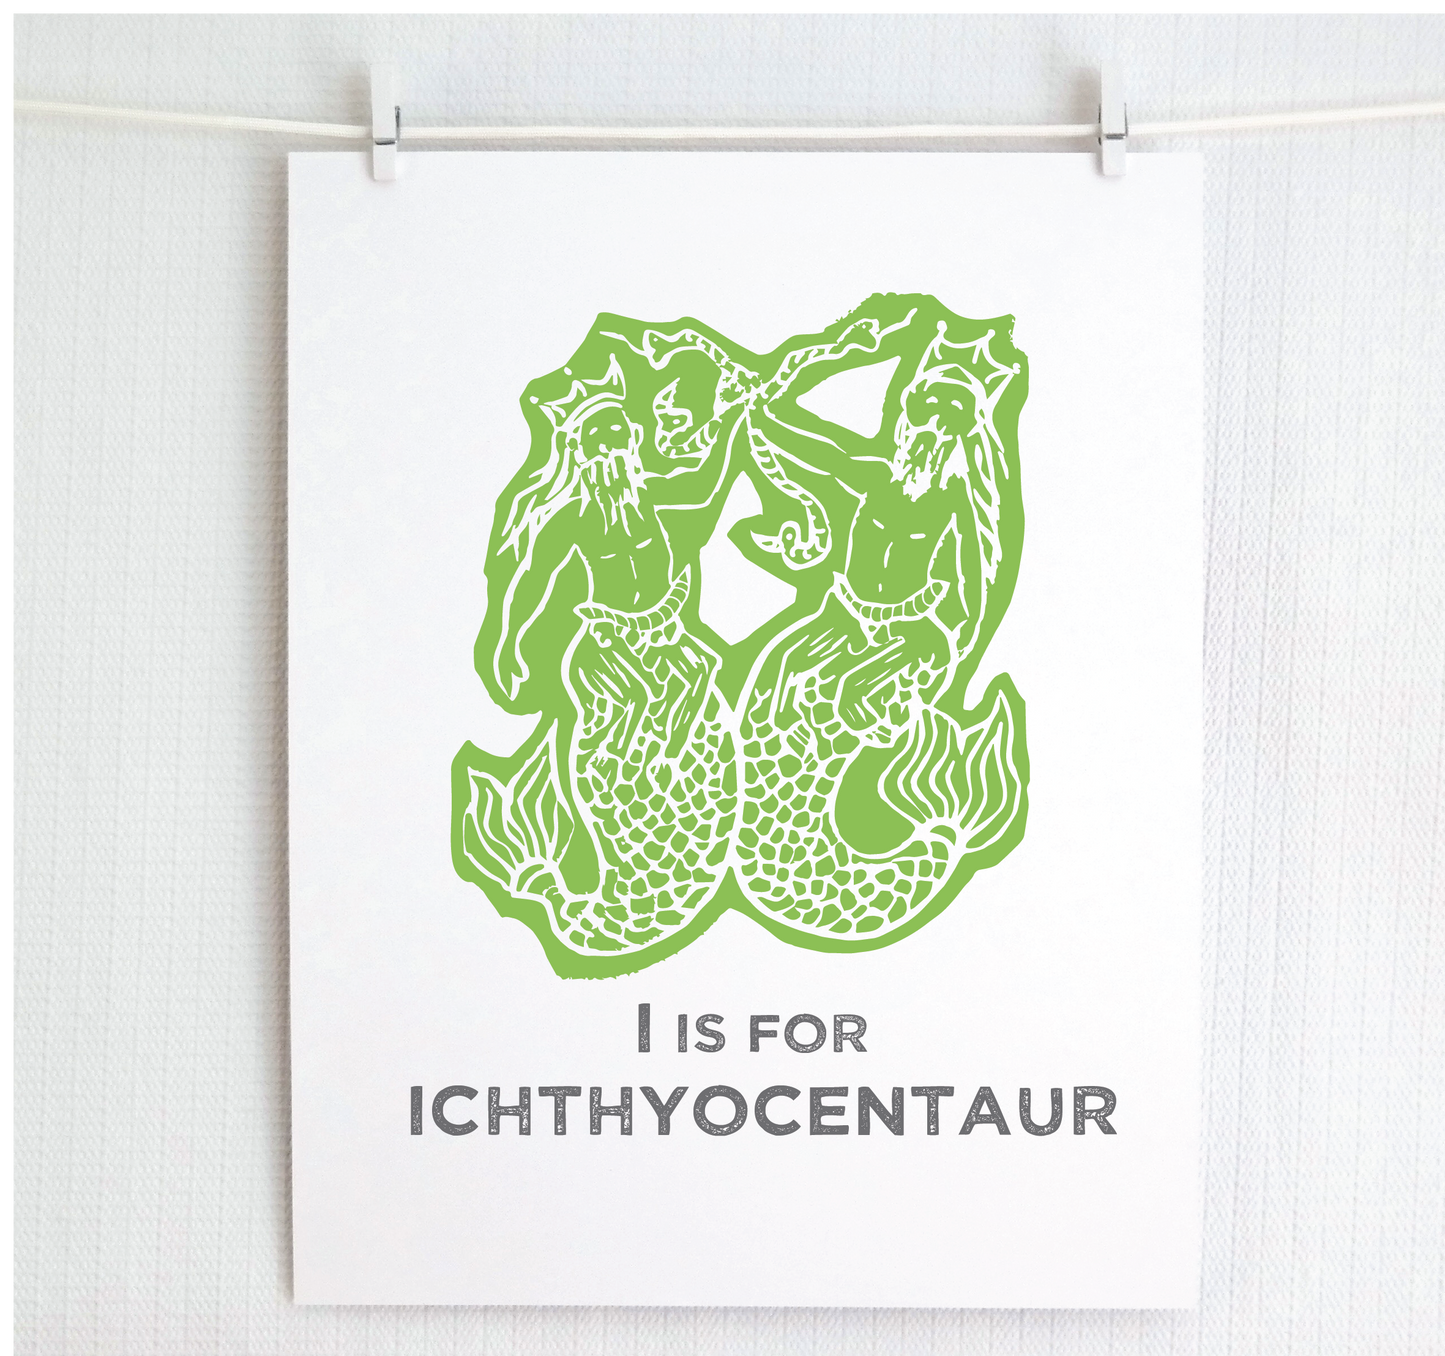 I is for Ichthyocentaur